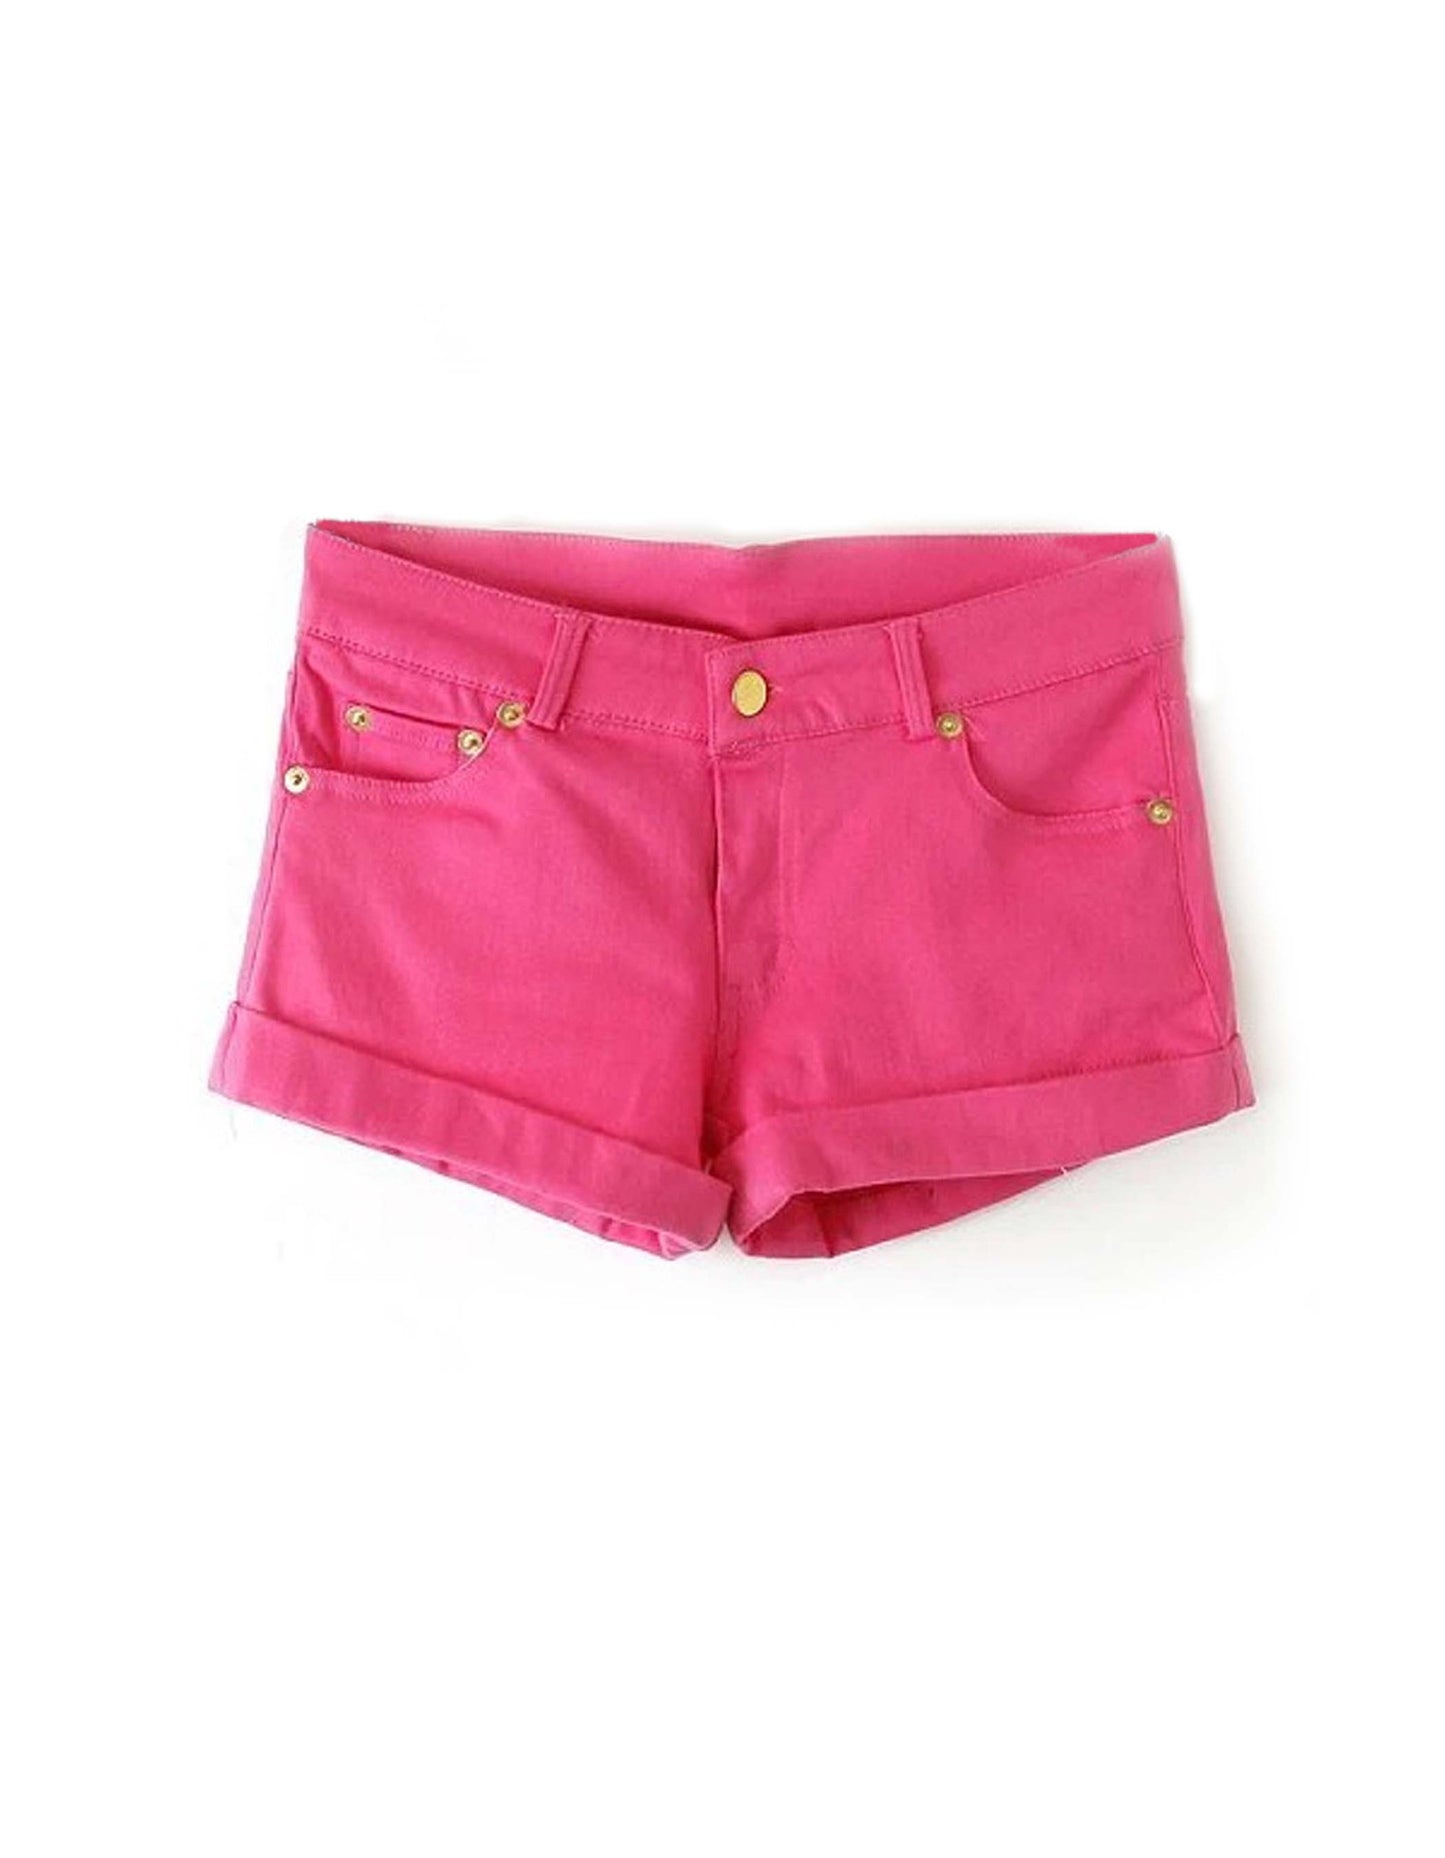 Summer Hot Pink Shorts